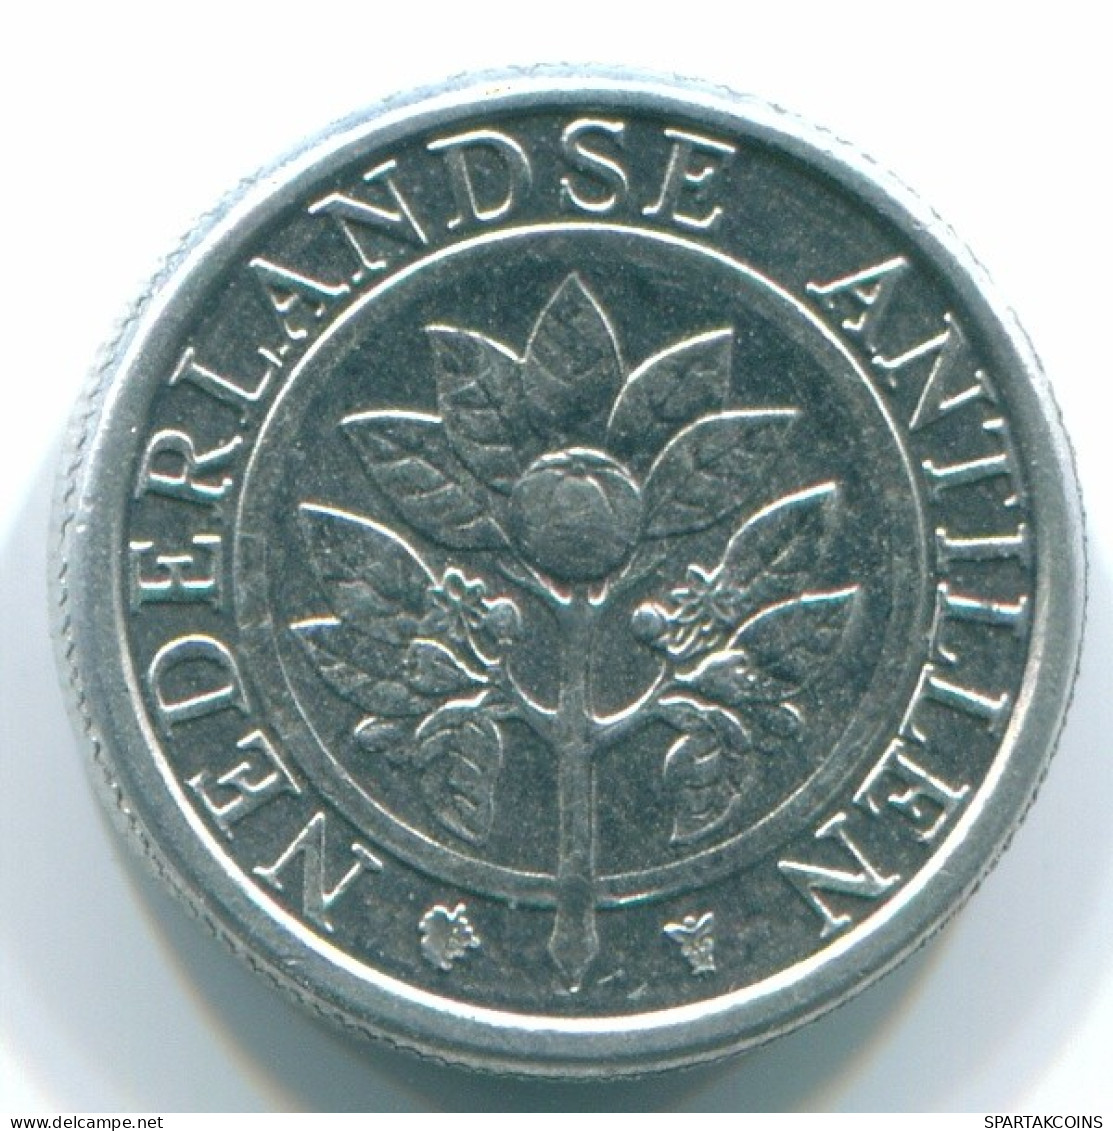 1 CENT 2001 NIEDERLÄNDISCHE ANTILLEN Aluminium Koloniale Münze #S13165.D.A - Niederländische Antillen